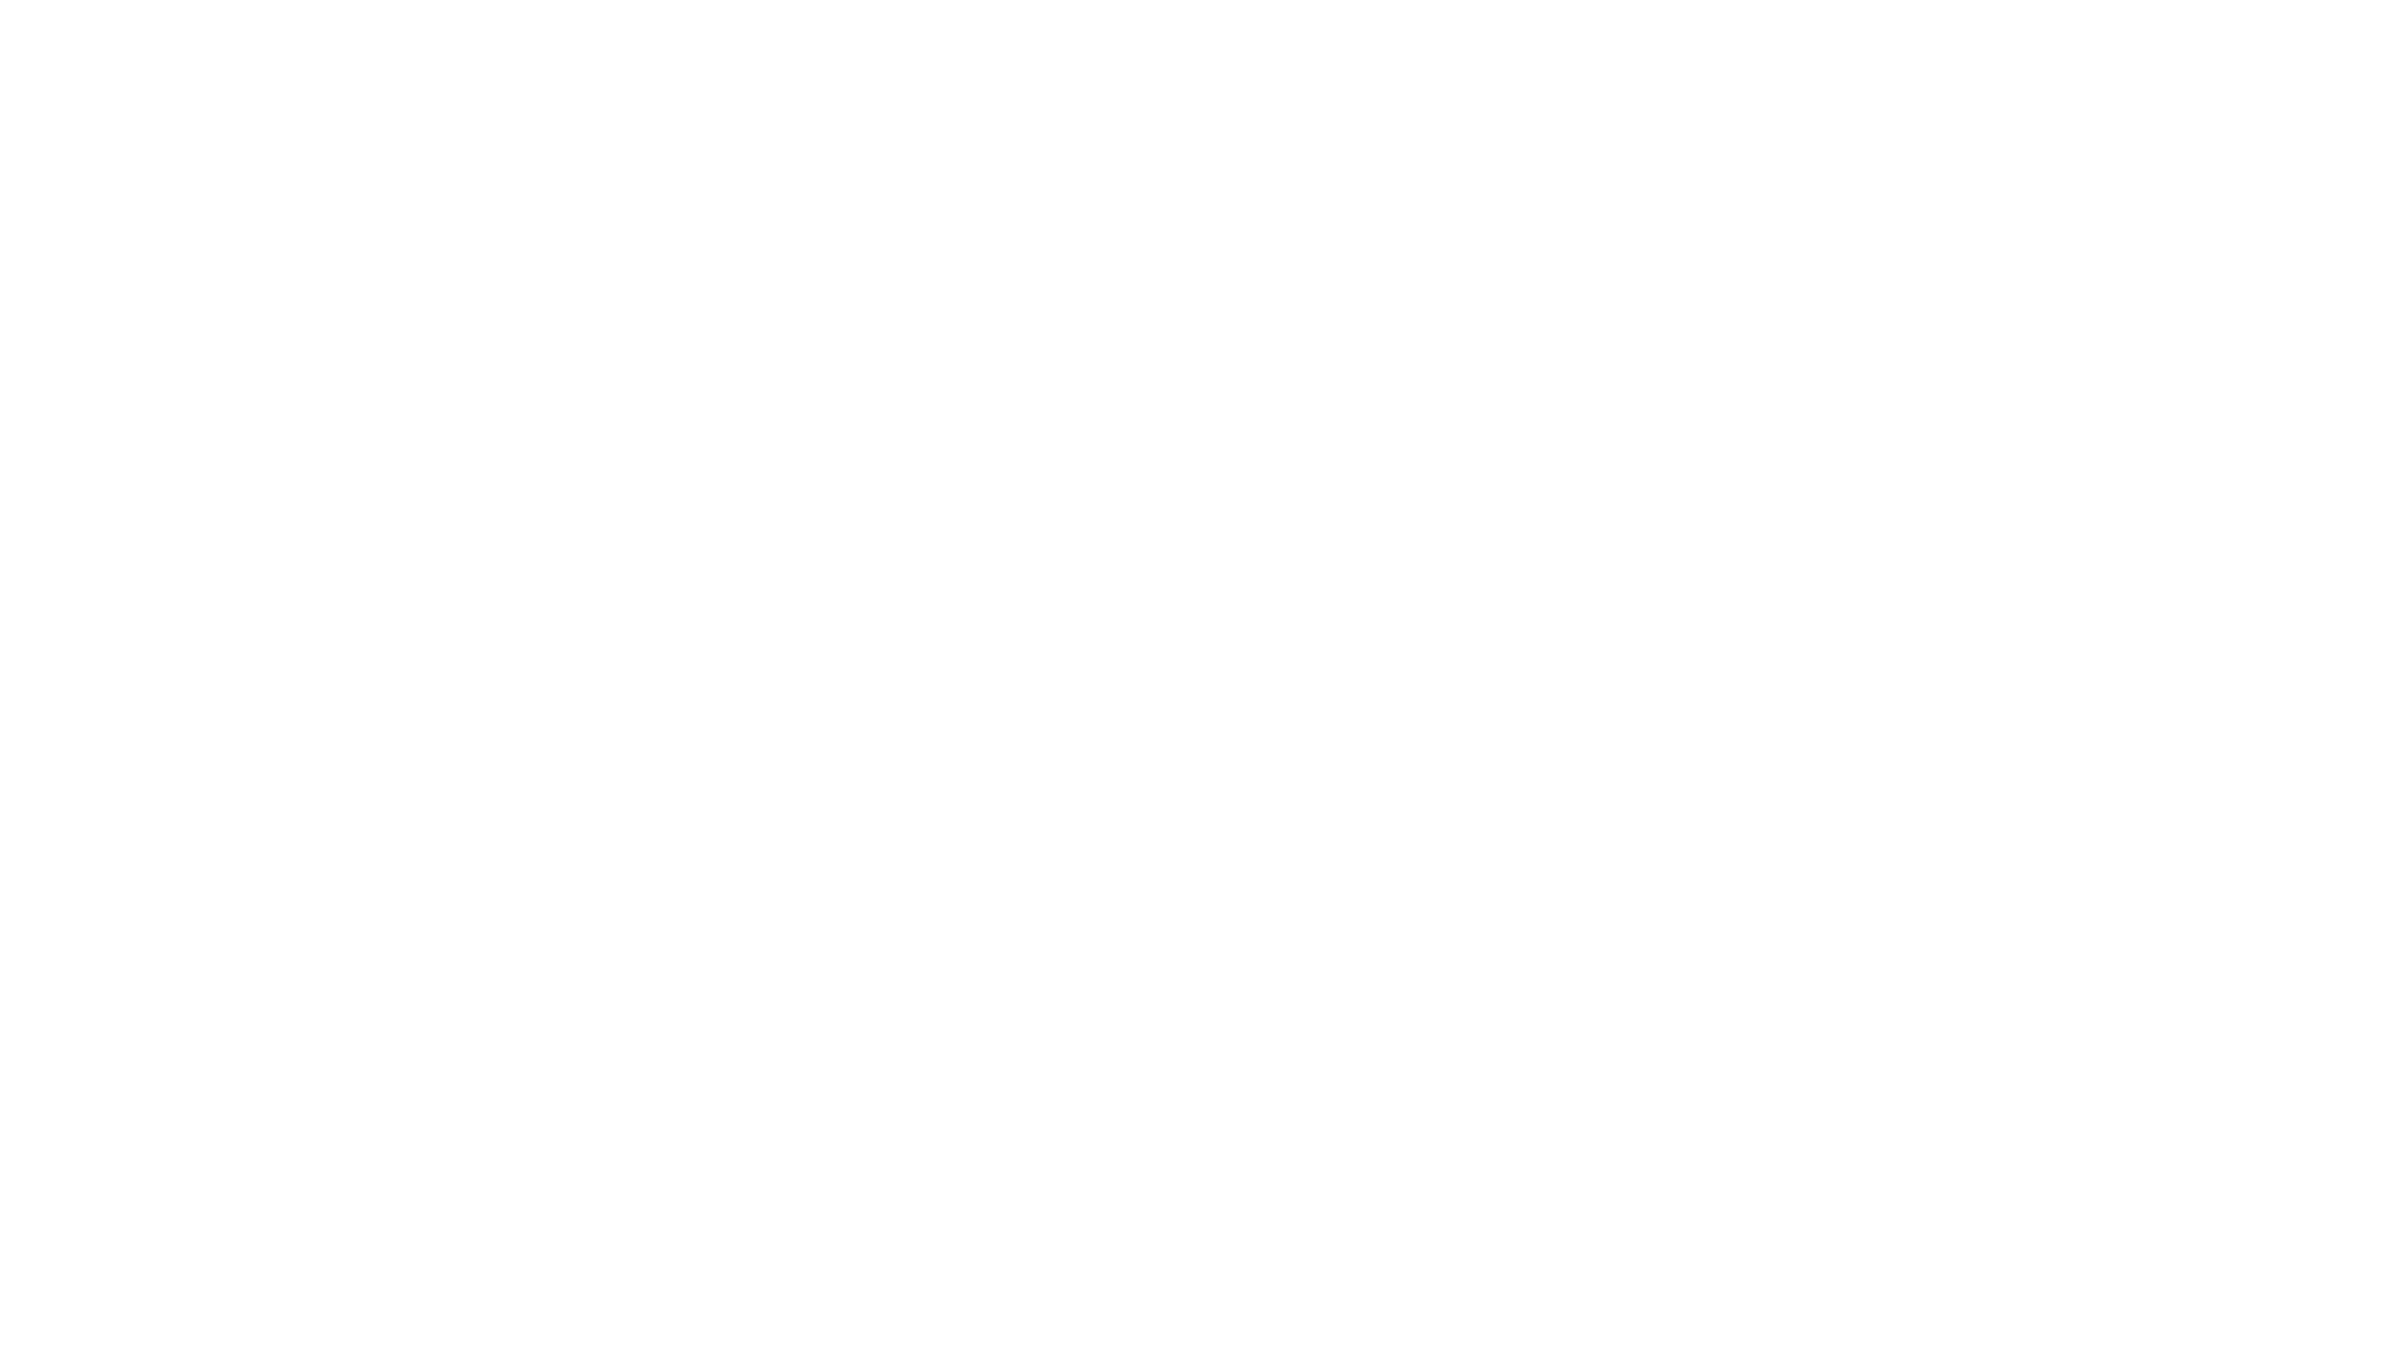 Play Spark